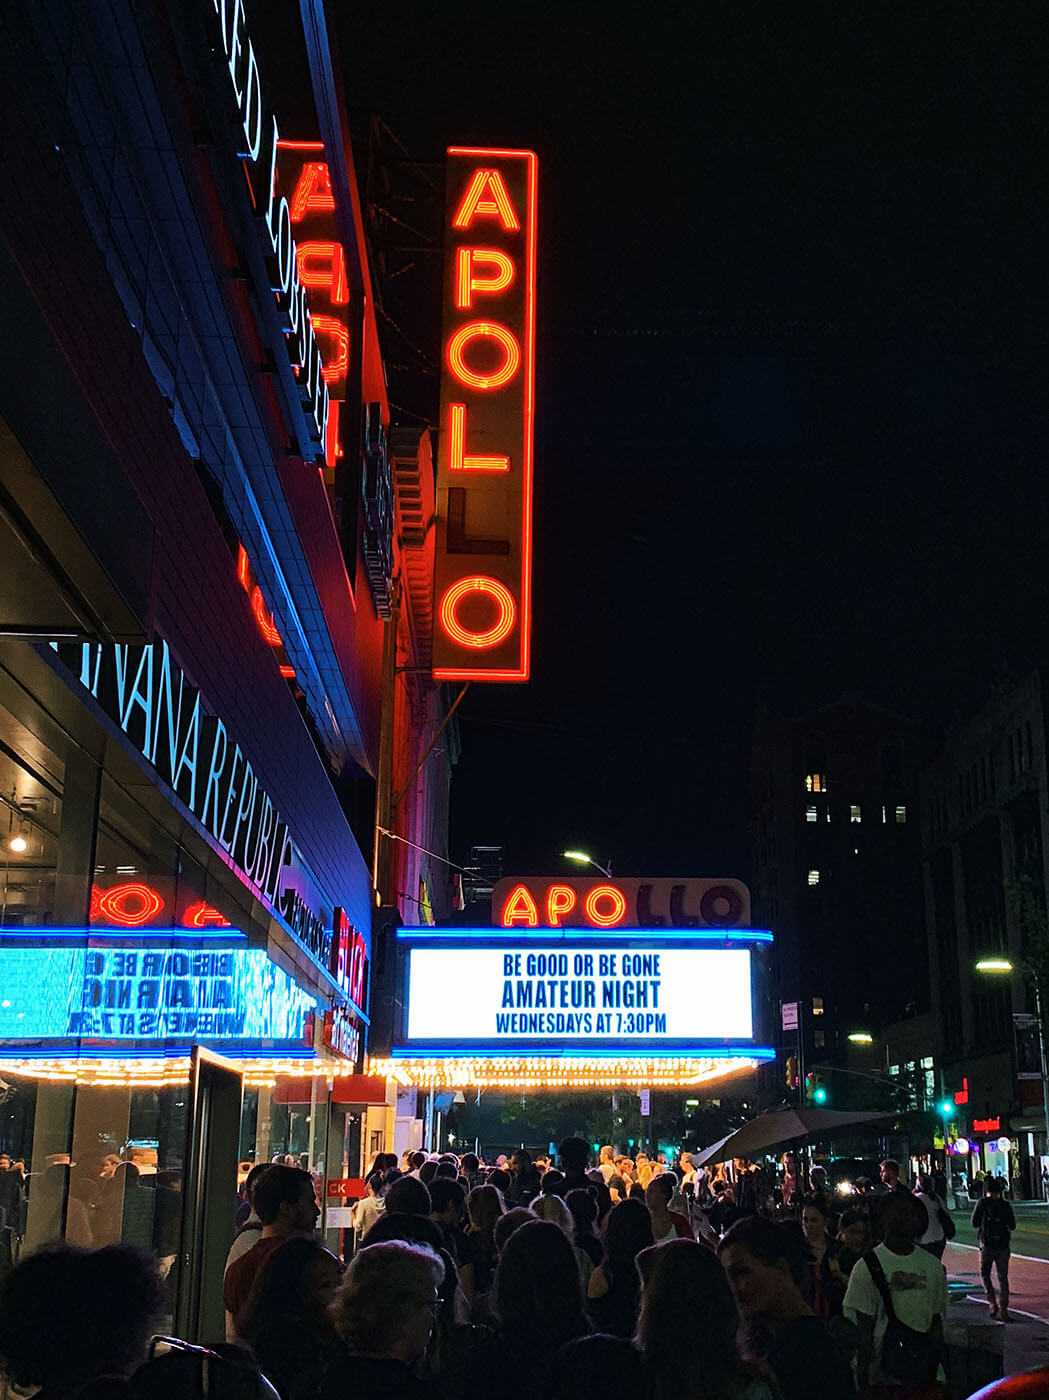 NYC Itinerary - Apollo Theatre